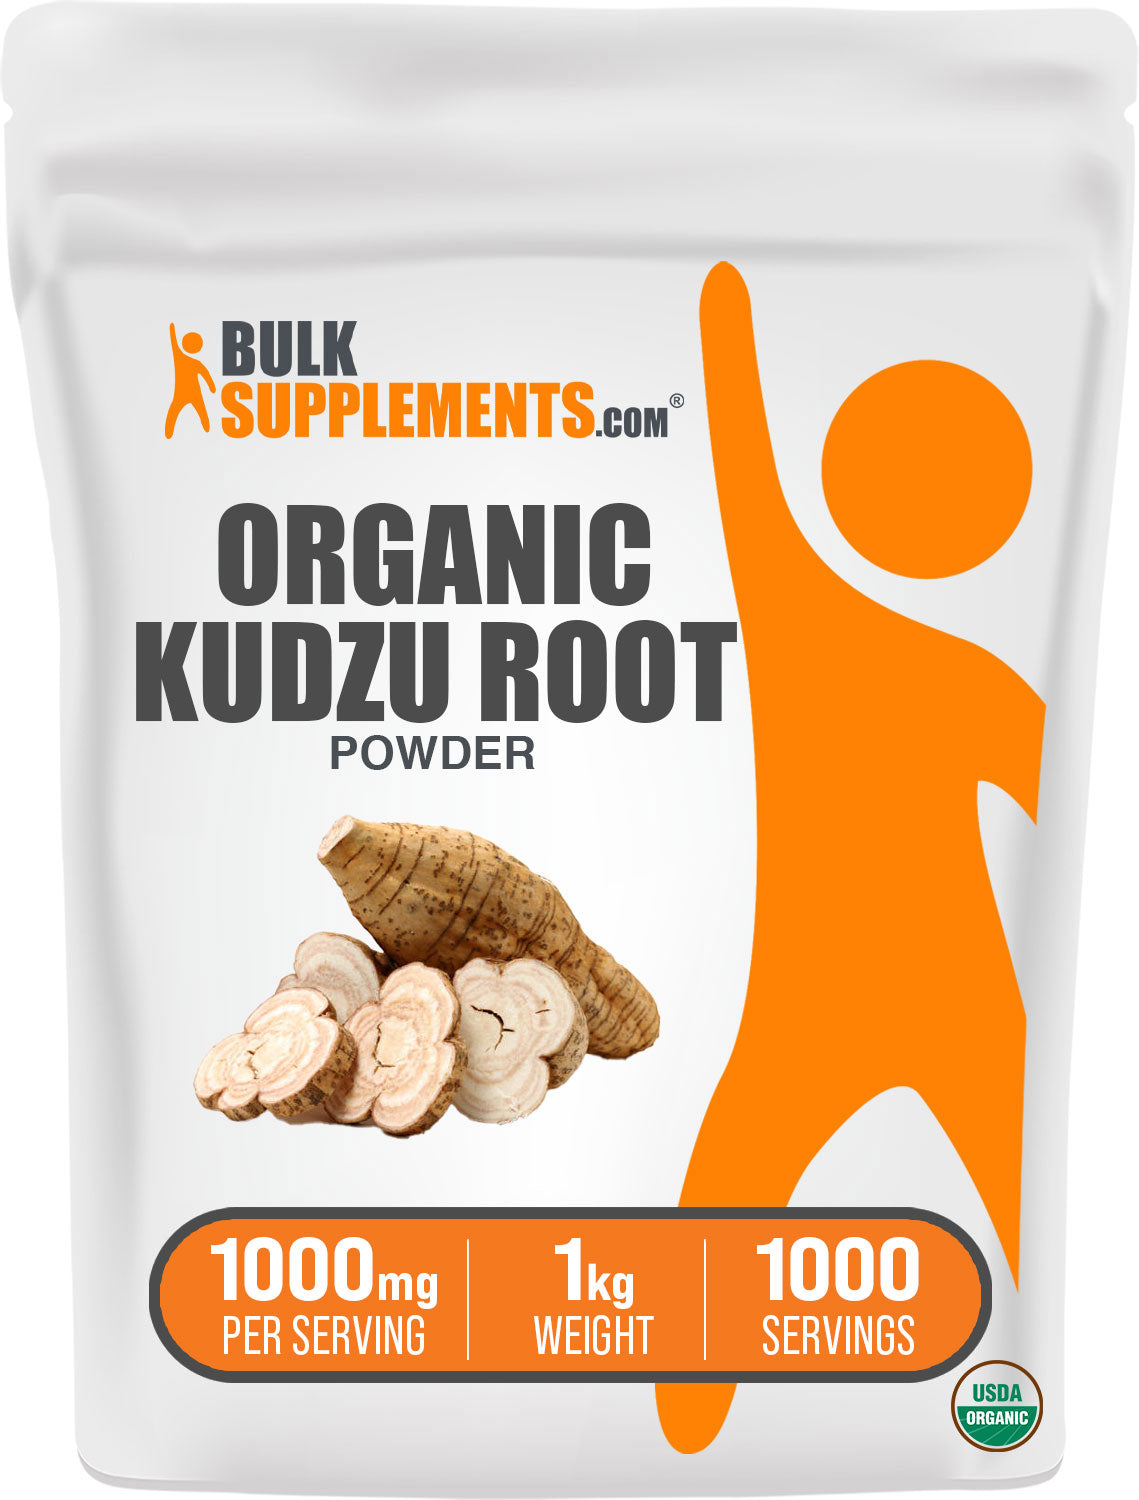 Organic Kudzu Root Powder 1kg Bag